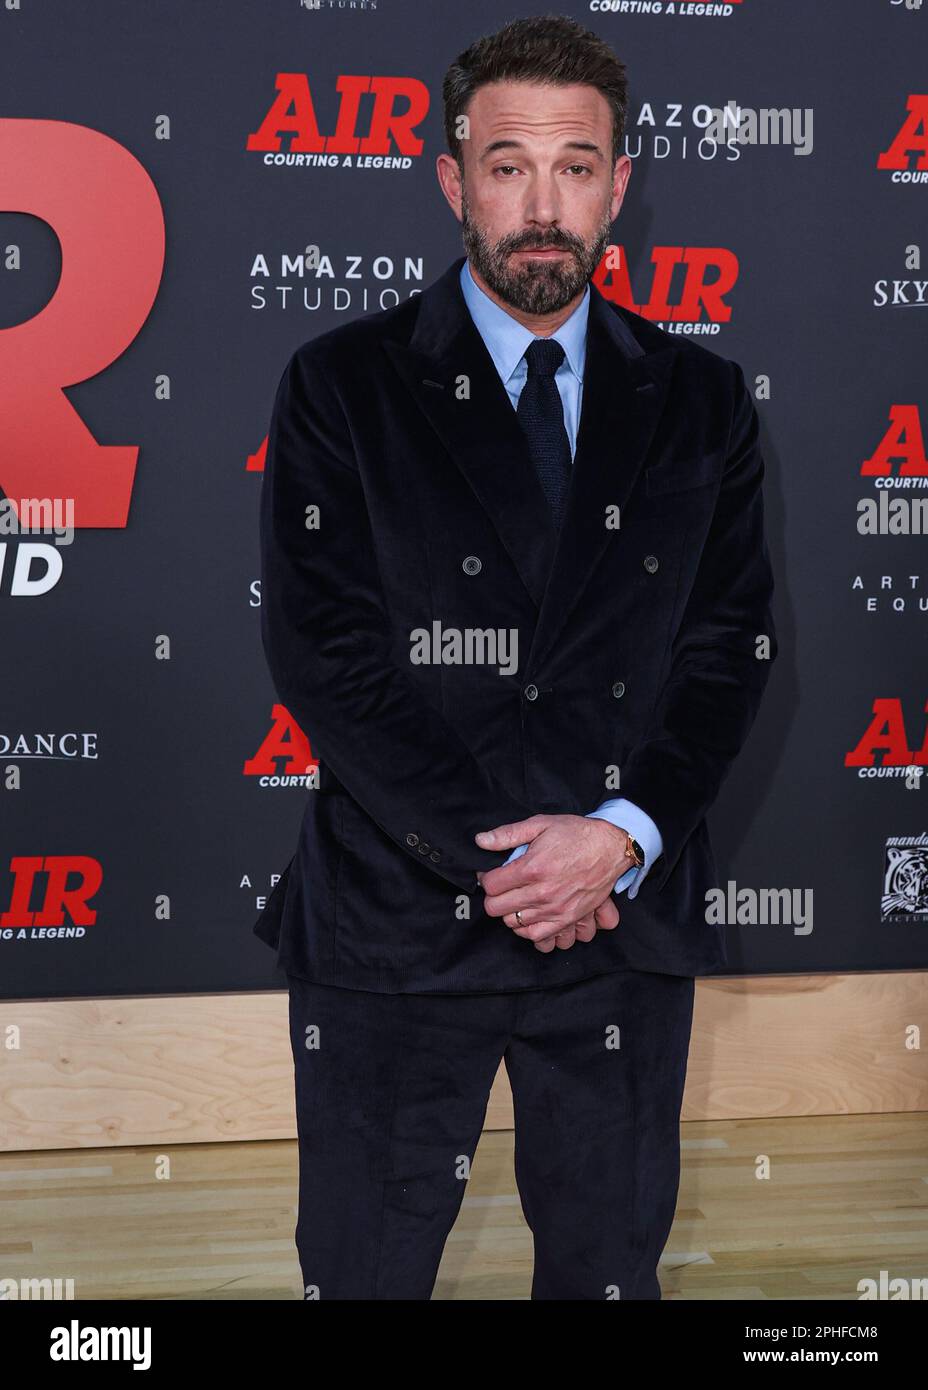 WESTWOOD, LOS ANGELES, CALIFORNIA, EE.UU. - 27 DE MARZO: El actor y  cineasta estadounidense Ben Affleck llega al estreno mundial de Amazon  Studios y Skydance Media 'Air' celebrado en el Regency Village